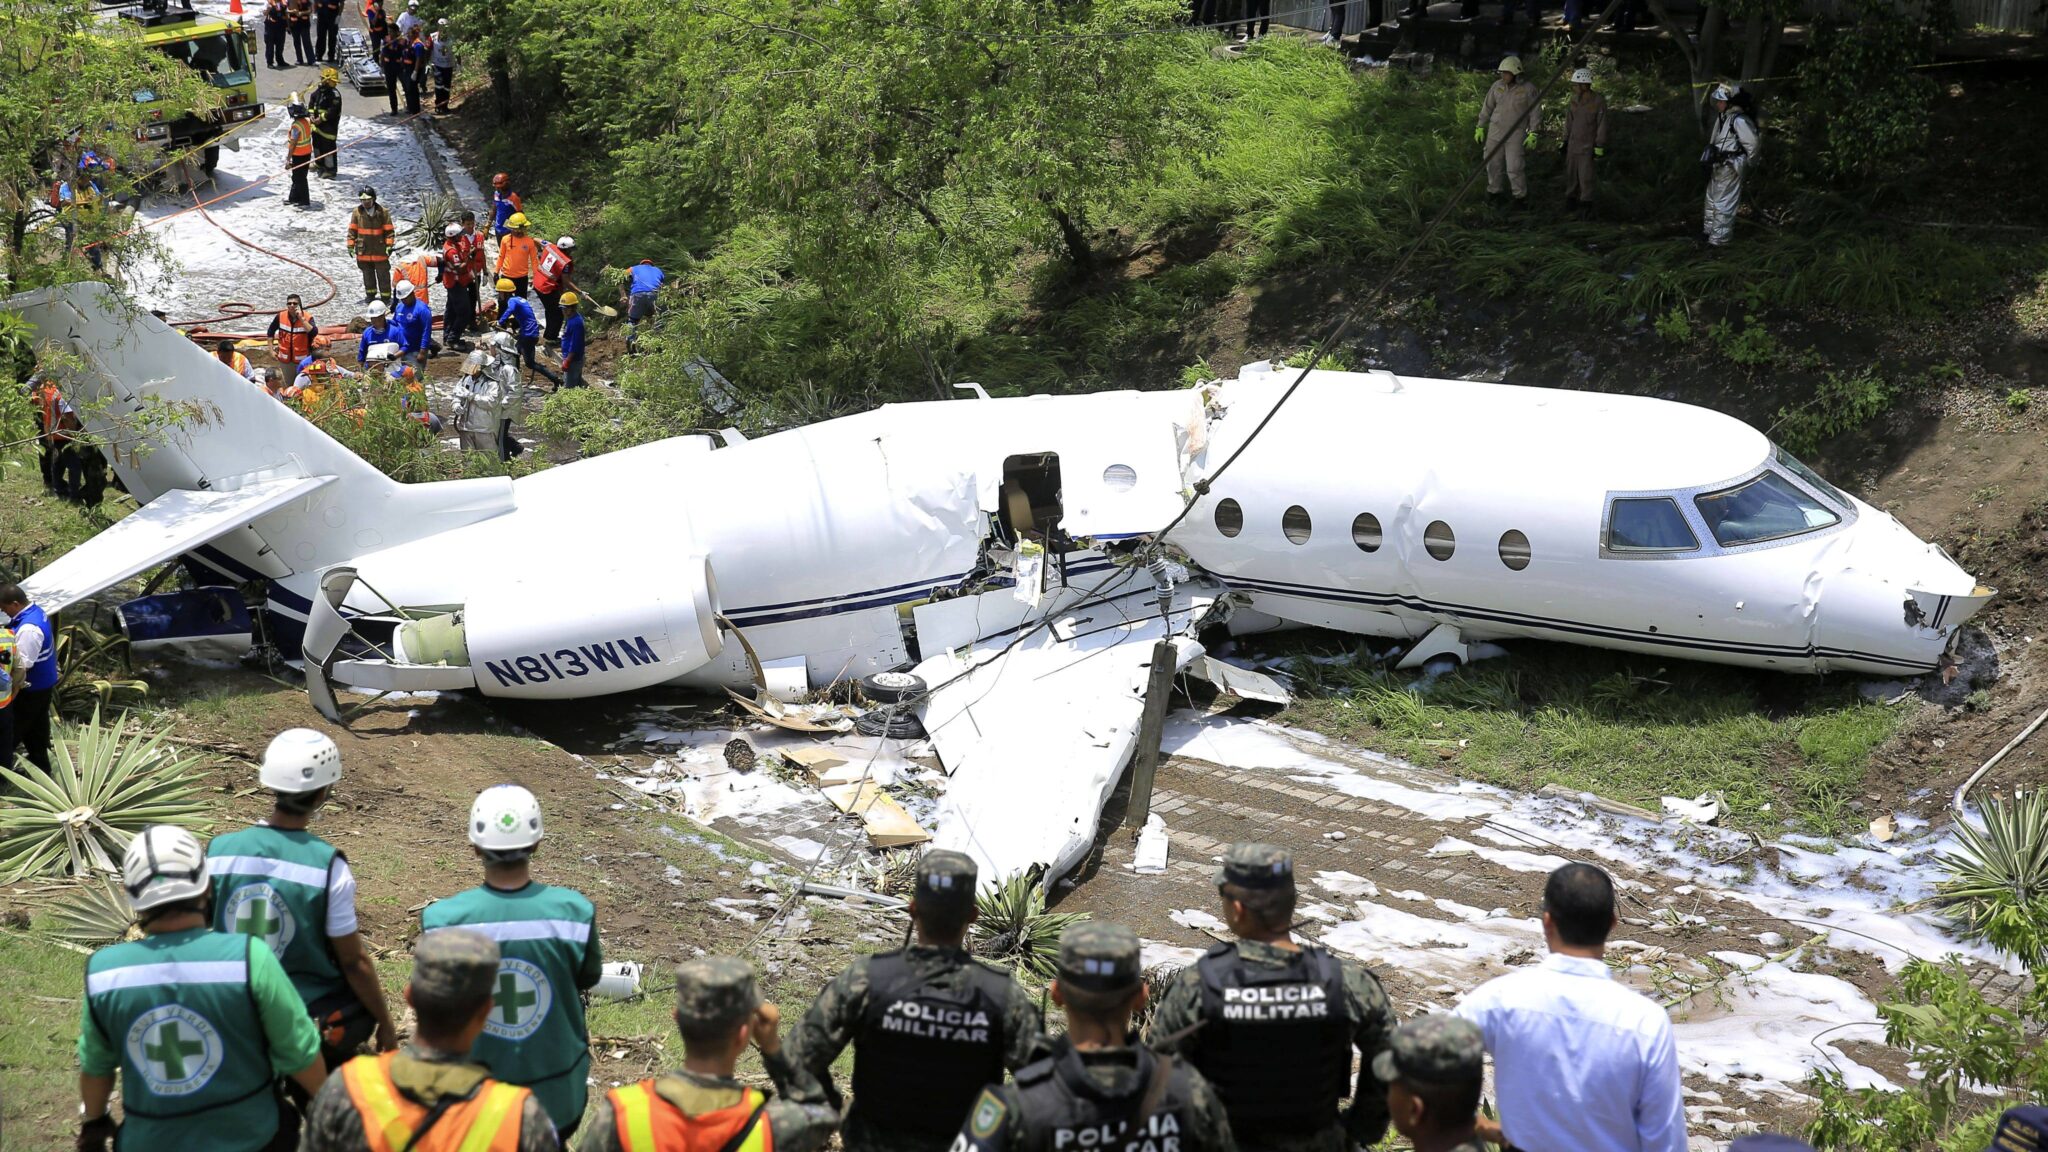 Есть ли шанс выжить в авиакатастрофе?